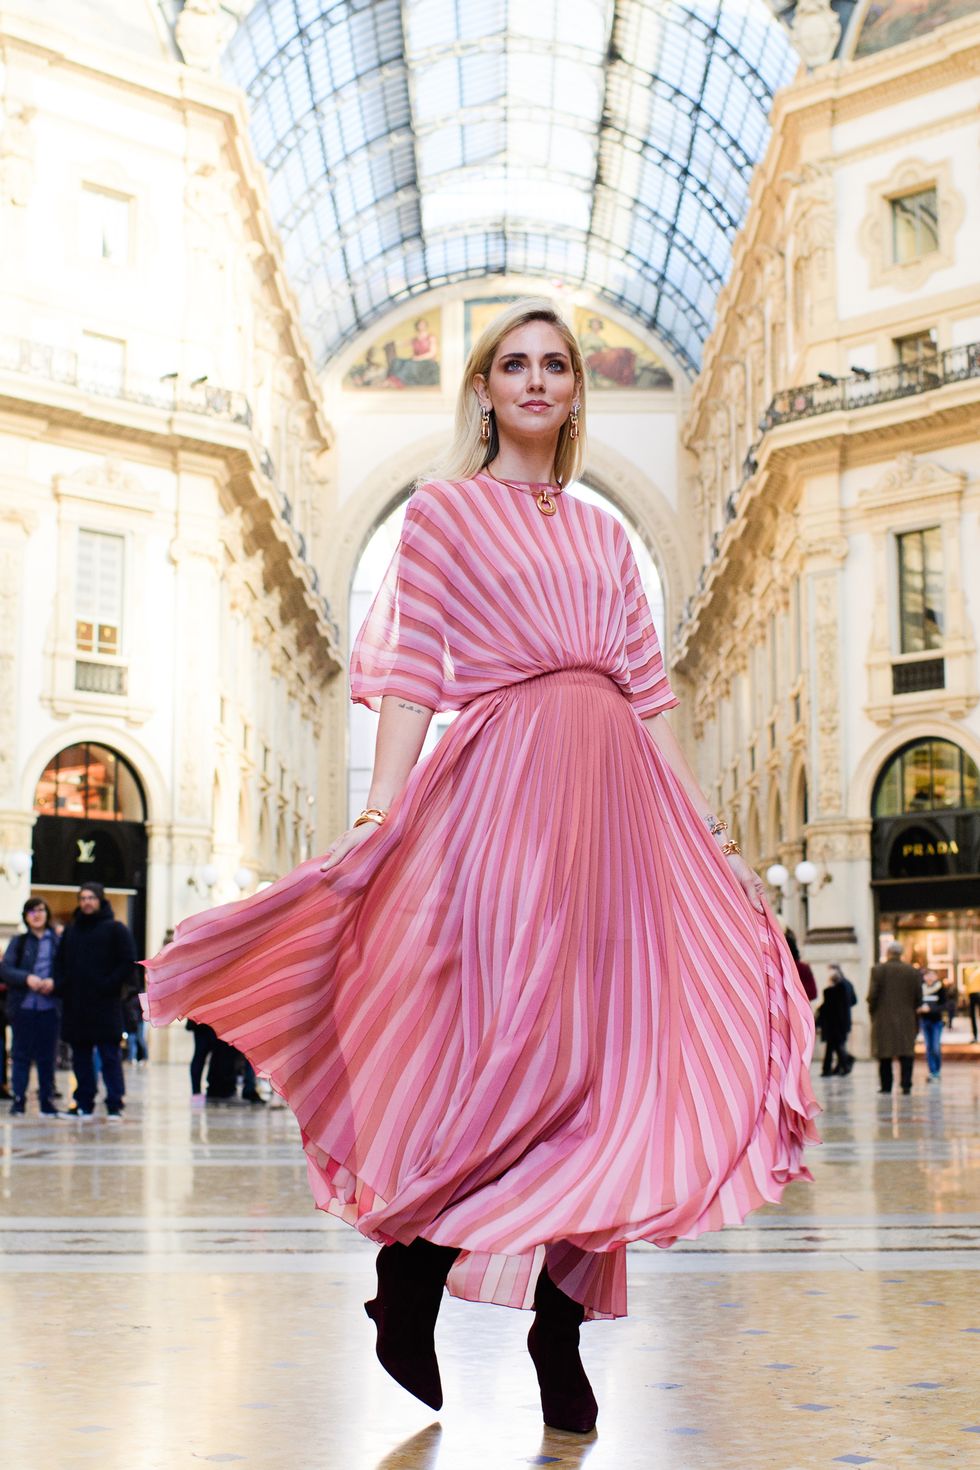 Chiara Ferragni Earned Her Wedding Dress Designer More Media Value